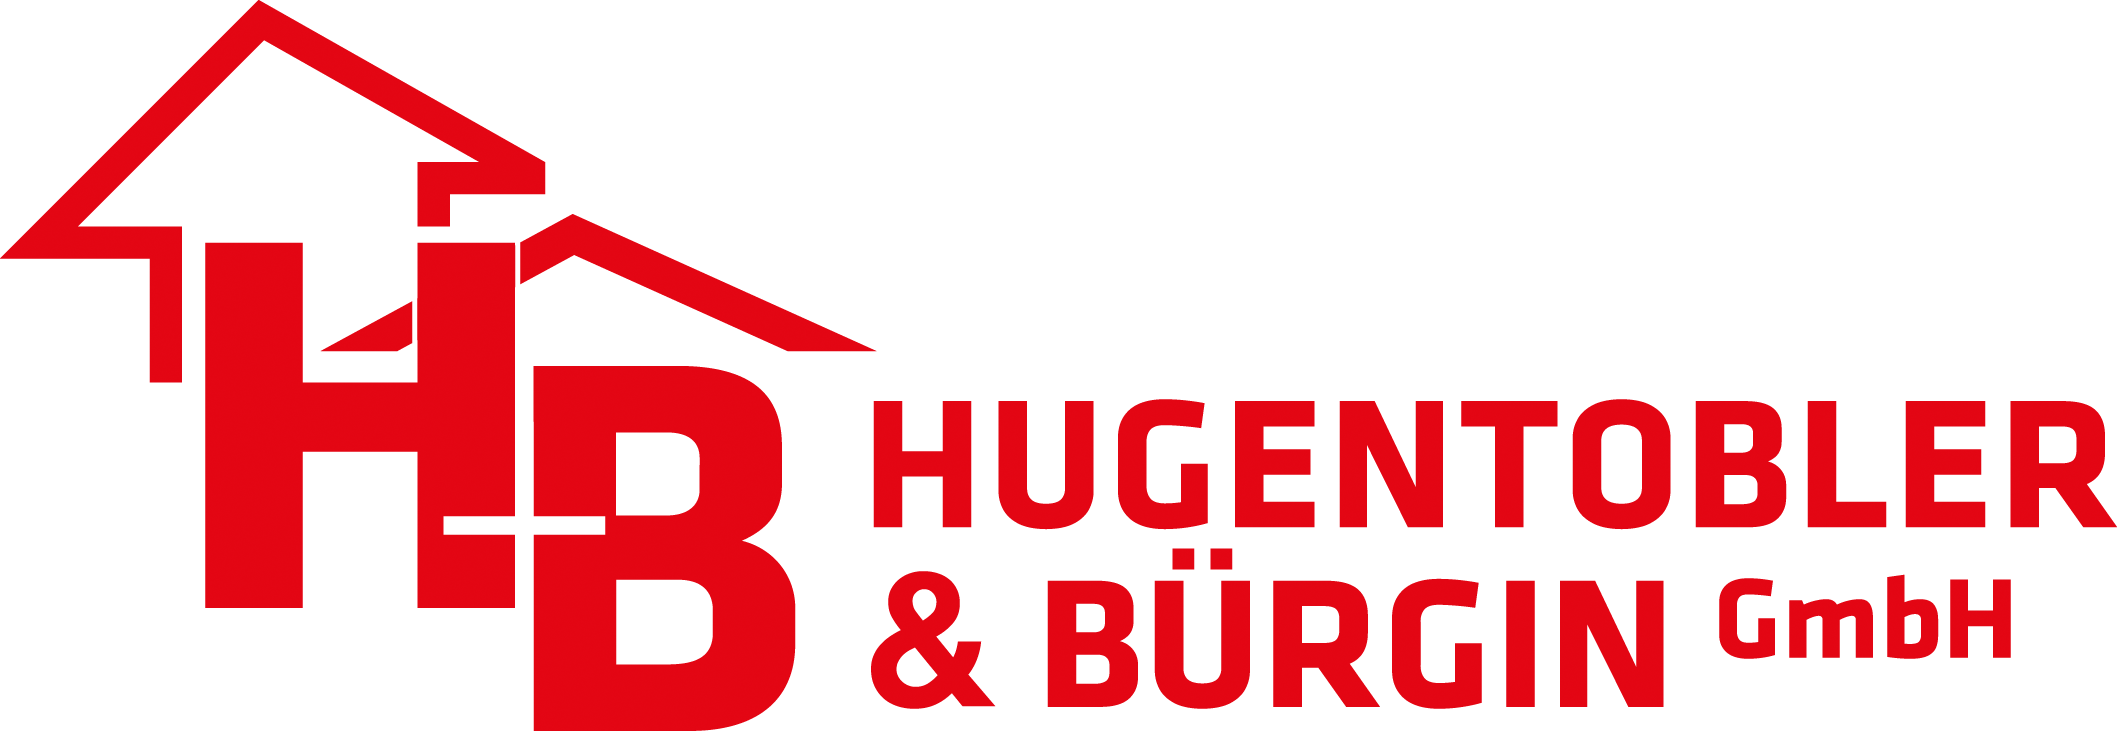  Hugentobler & Bürgin GmbH